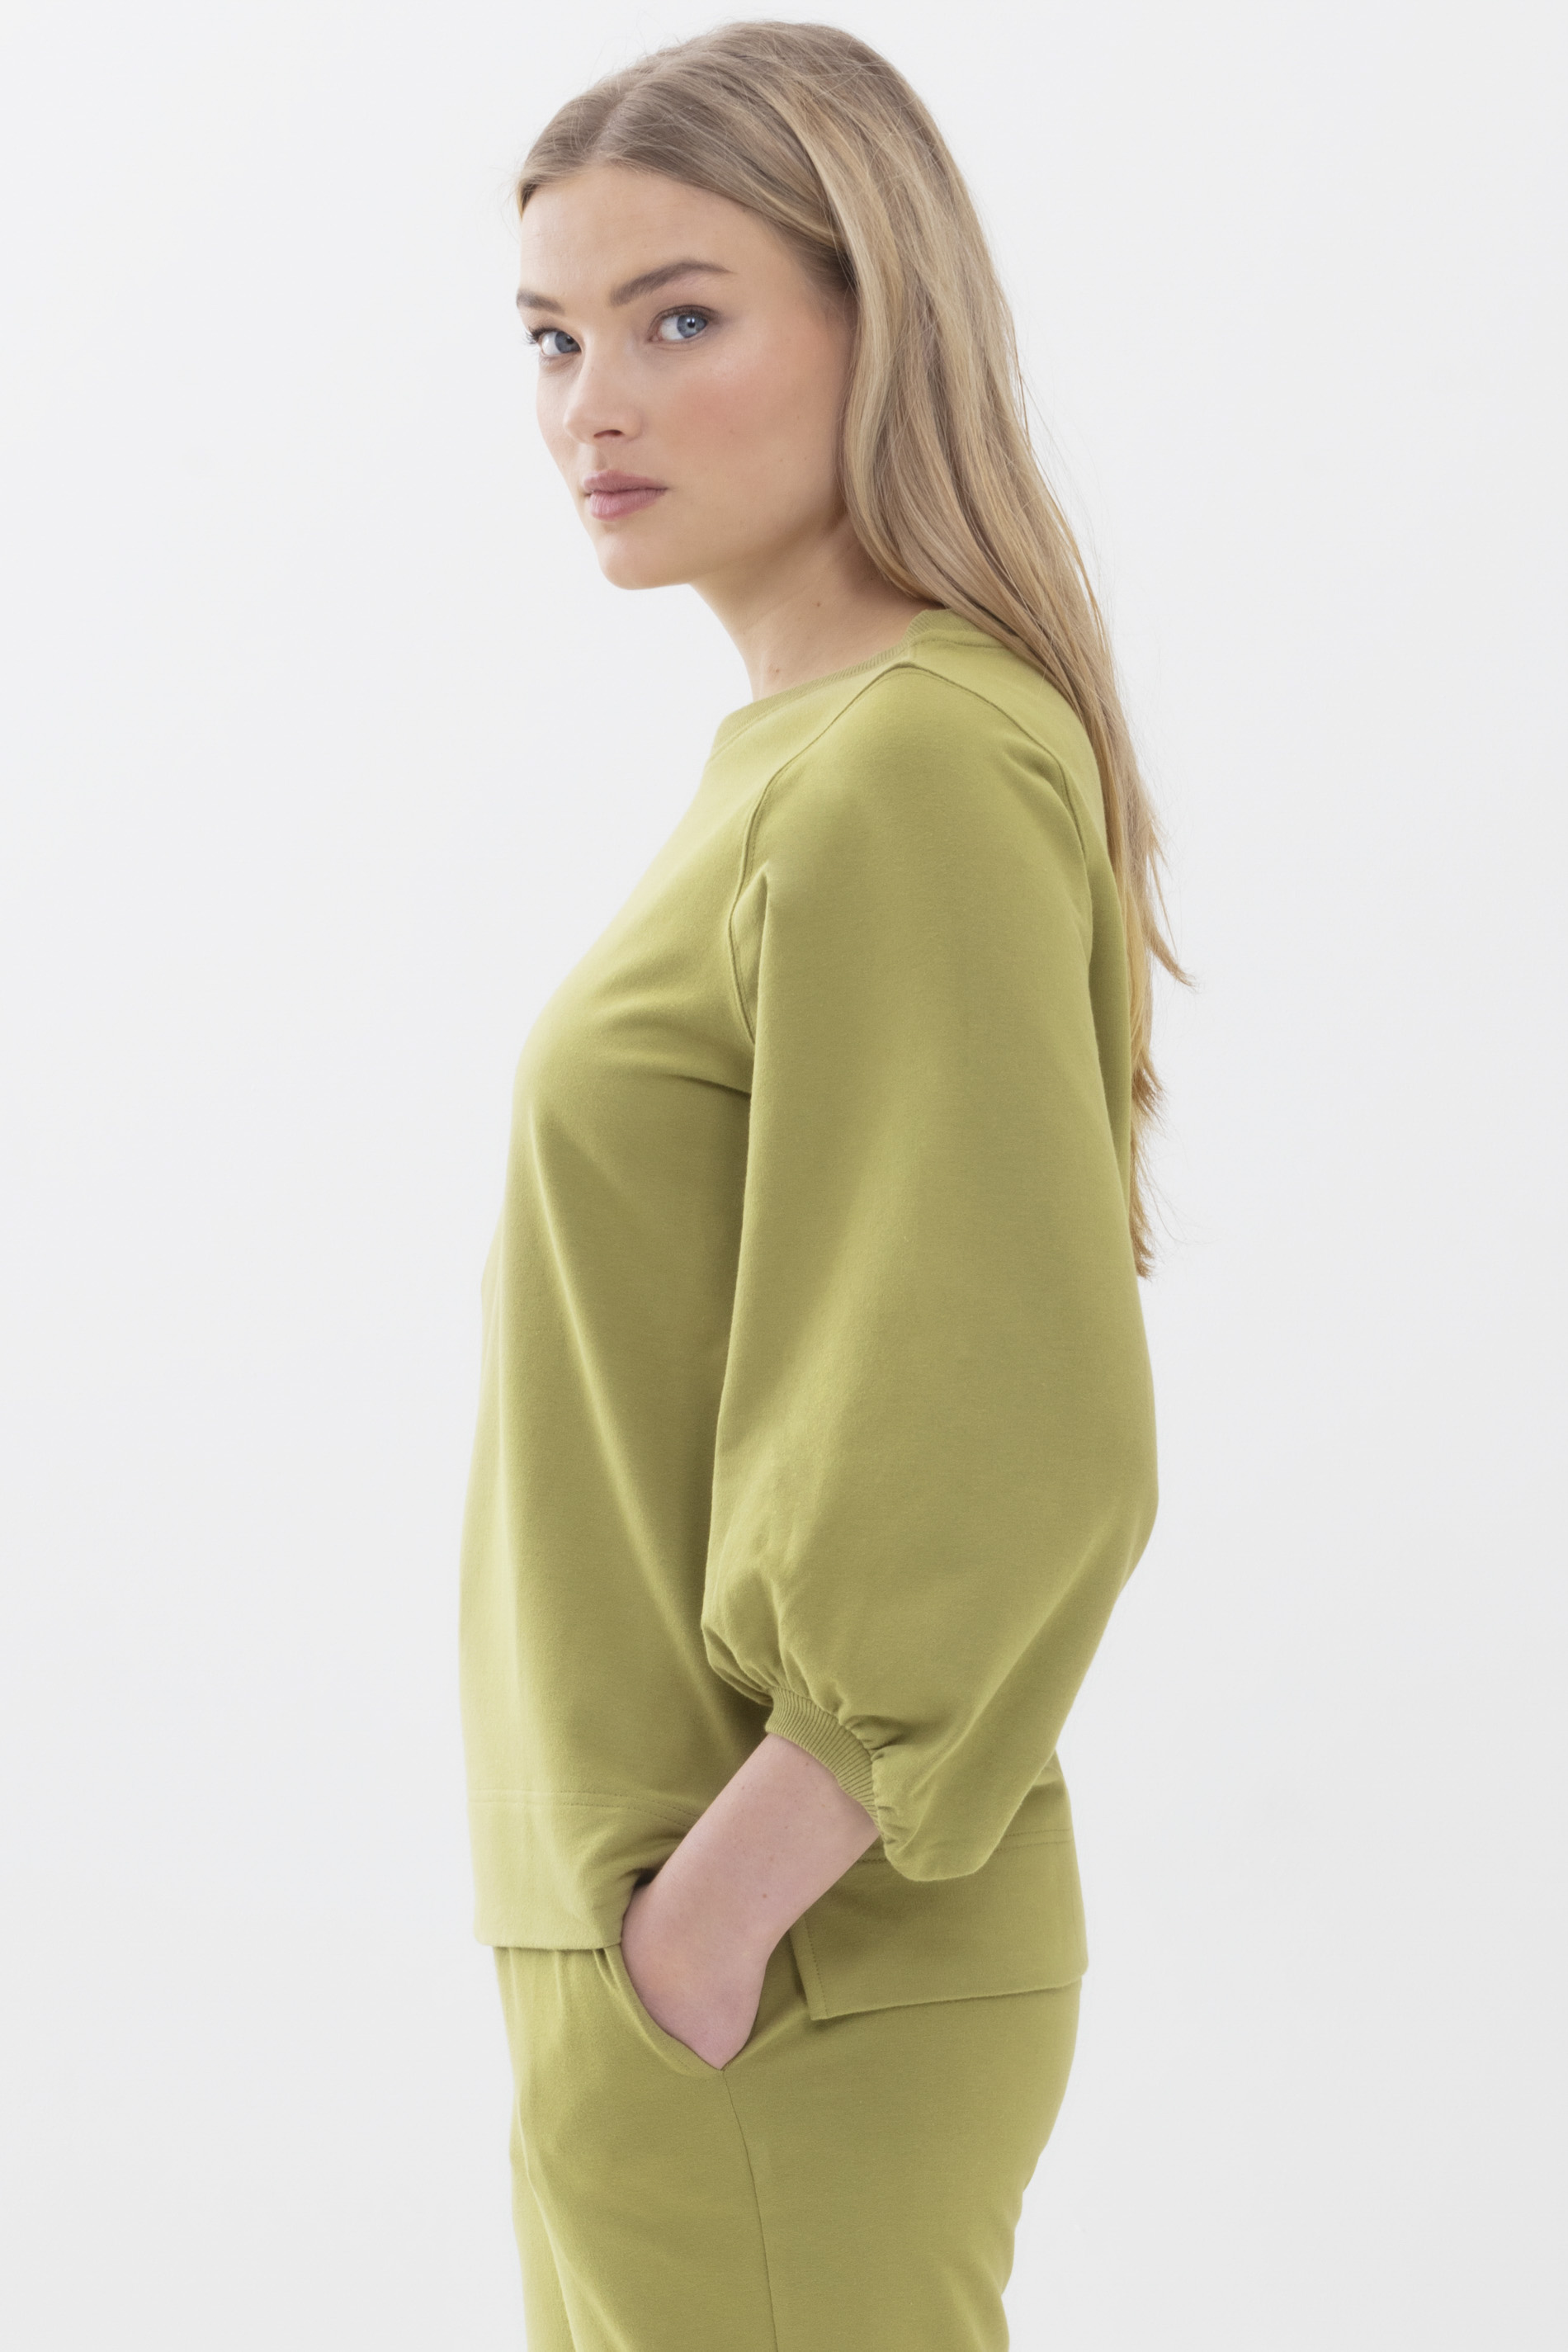 Sweater Tuscan Green Serie Mischa Detailansicht 02 | mey®